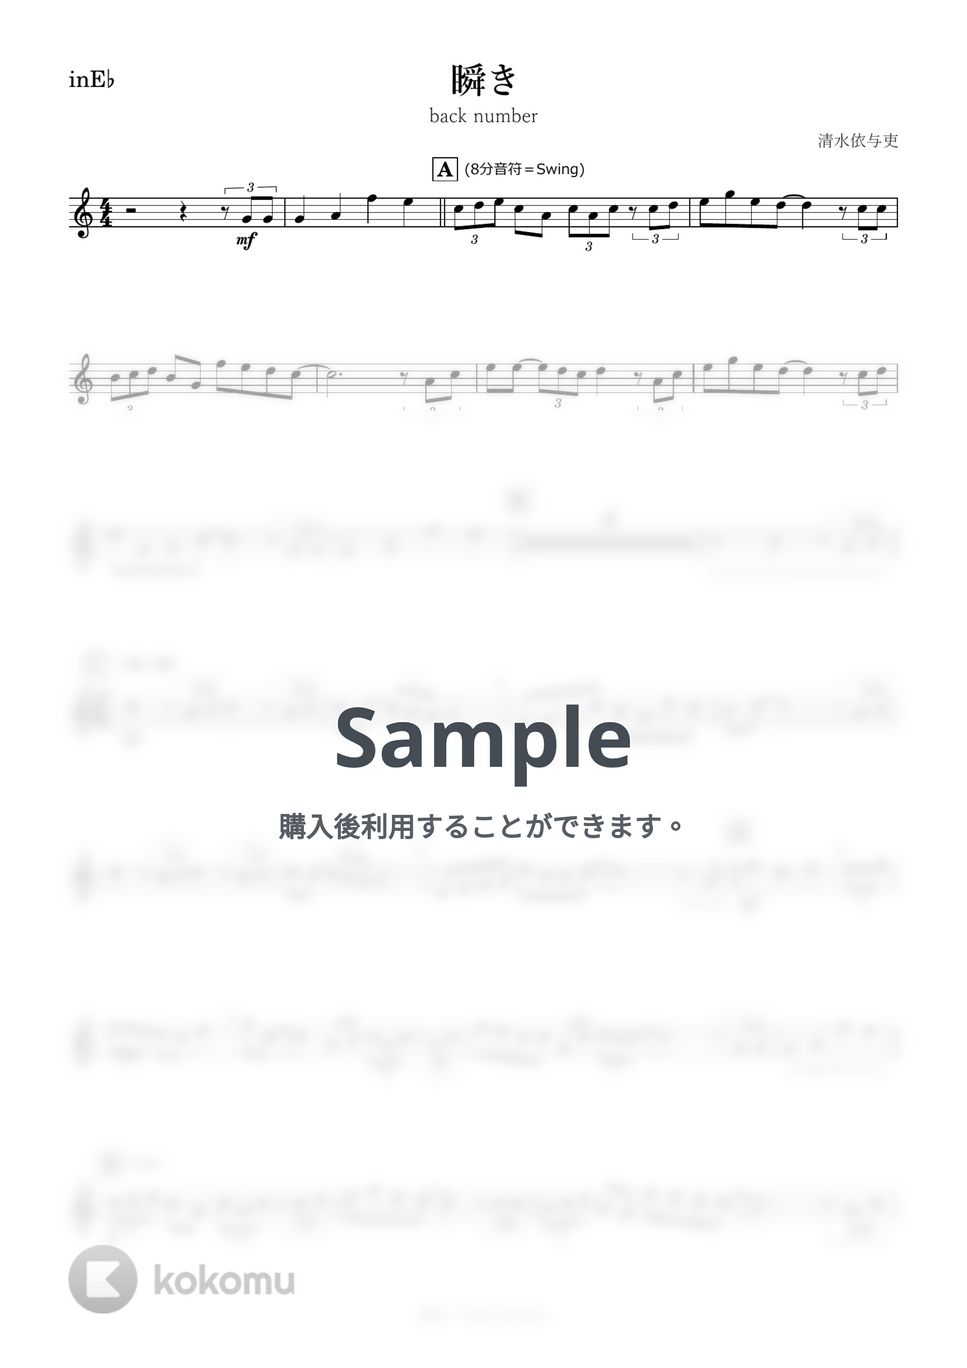 back number - 瞬き (E♭) by kanamusic